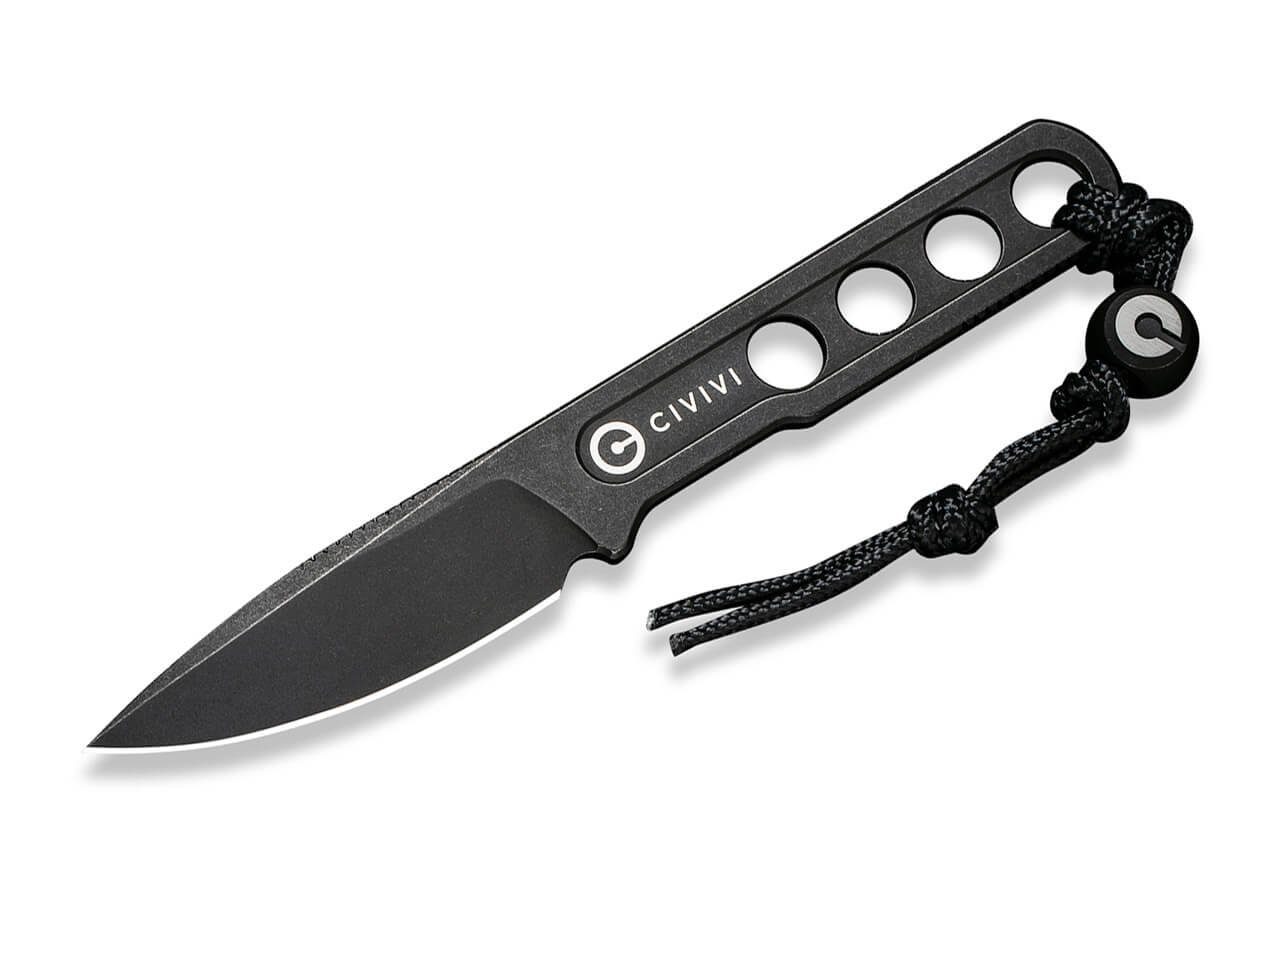 Böker Plus Universalmesser CIVIVI Circulus Black Feststehendes Messer mit Edelstahl Griff